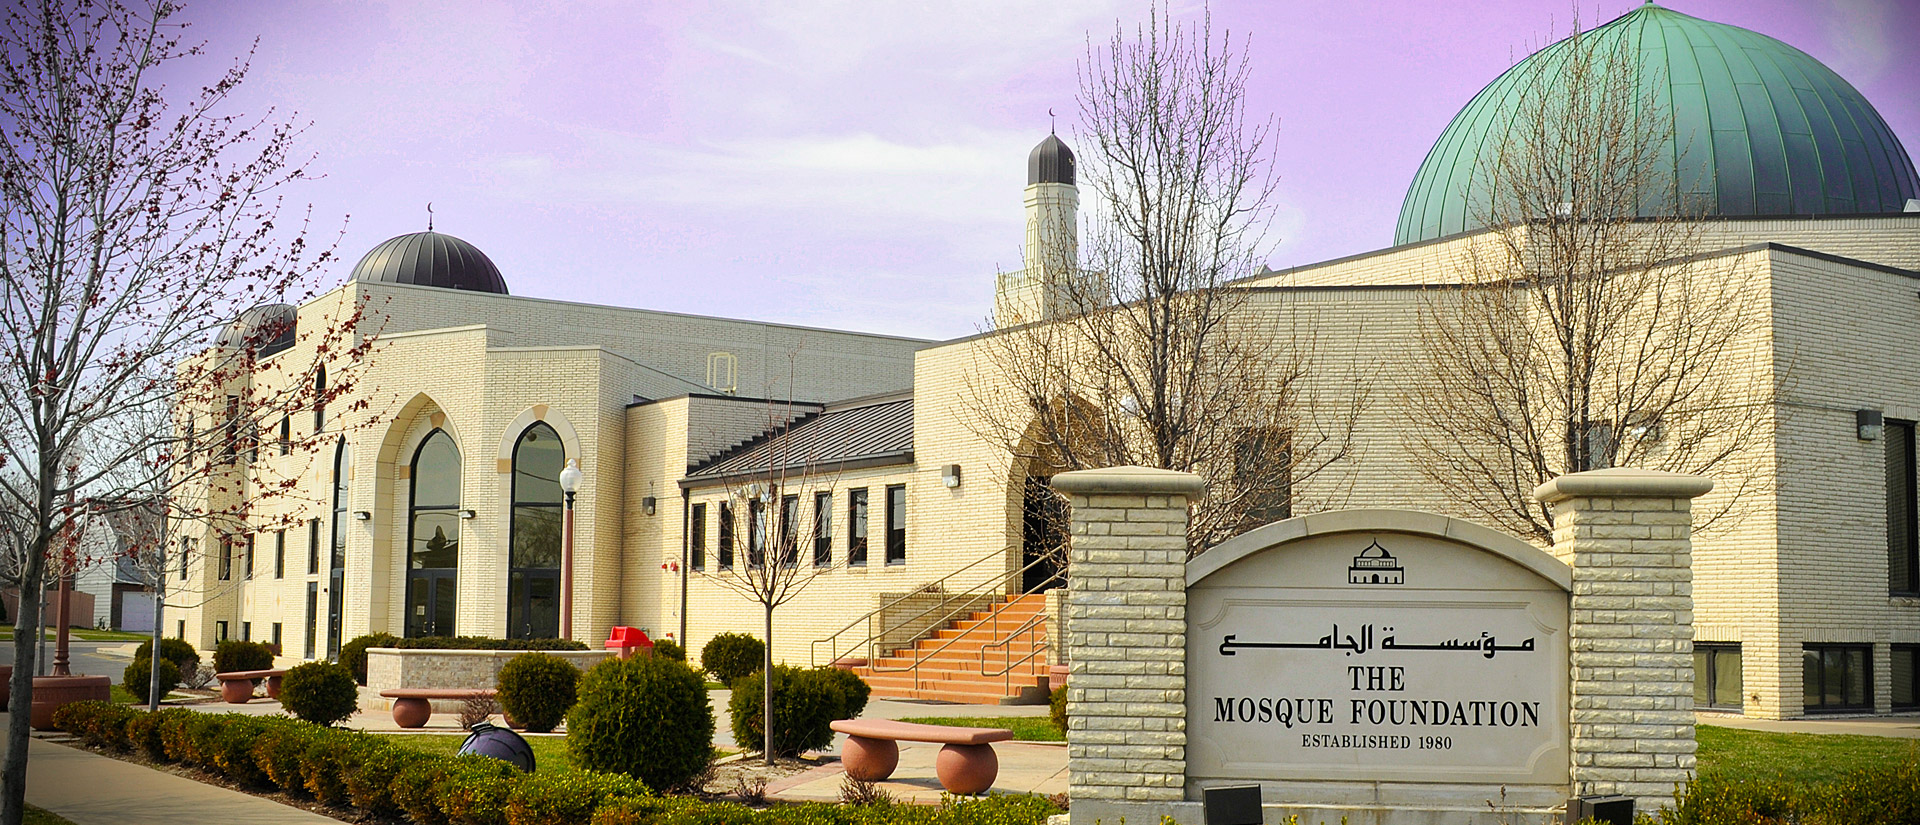 Mosque Foundation | Bridgeview, Illinois